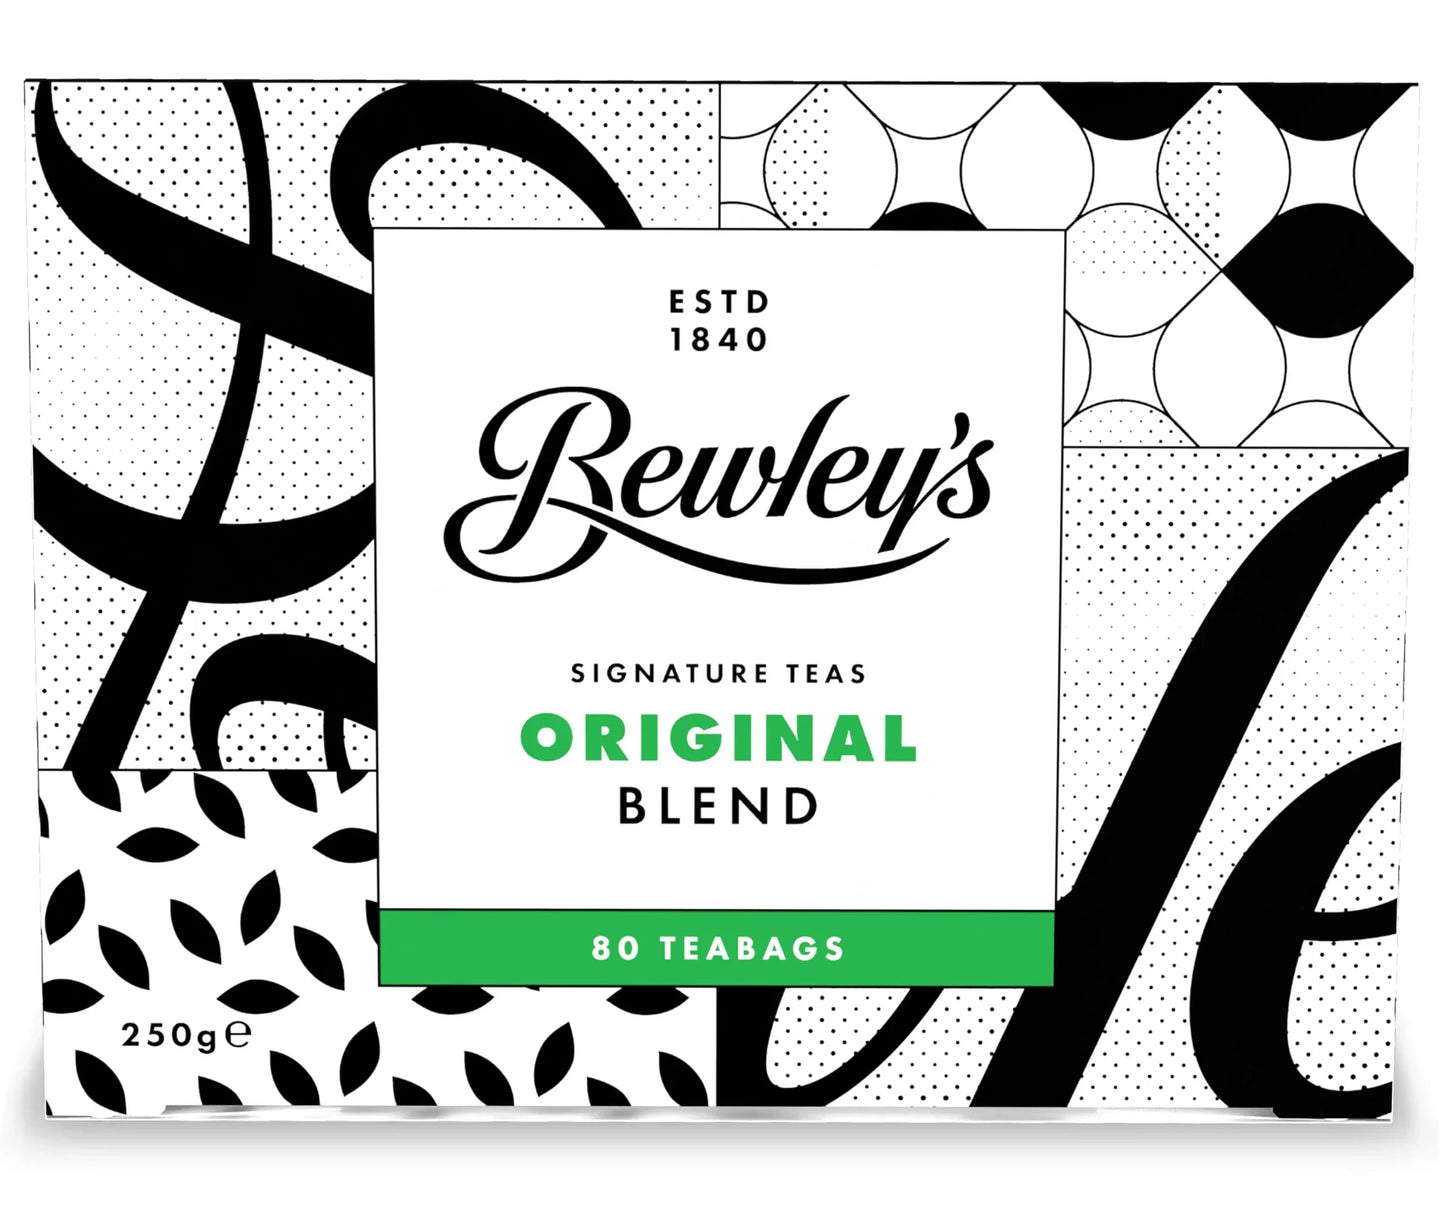 Bewley's Original Blend Tea 80's 250g